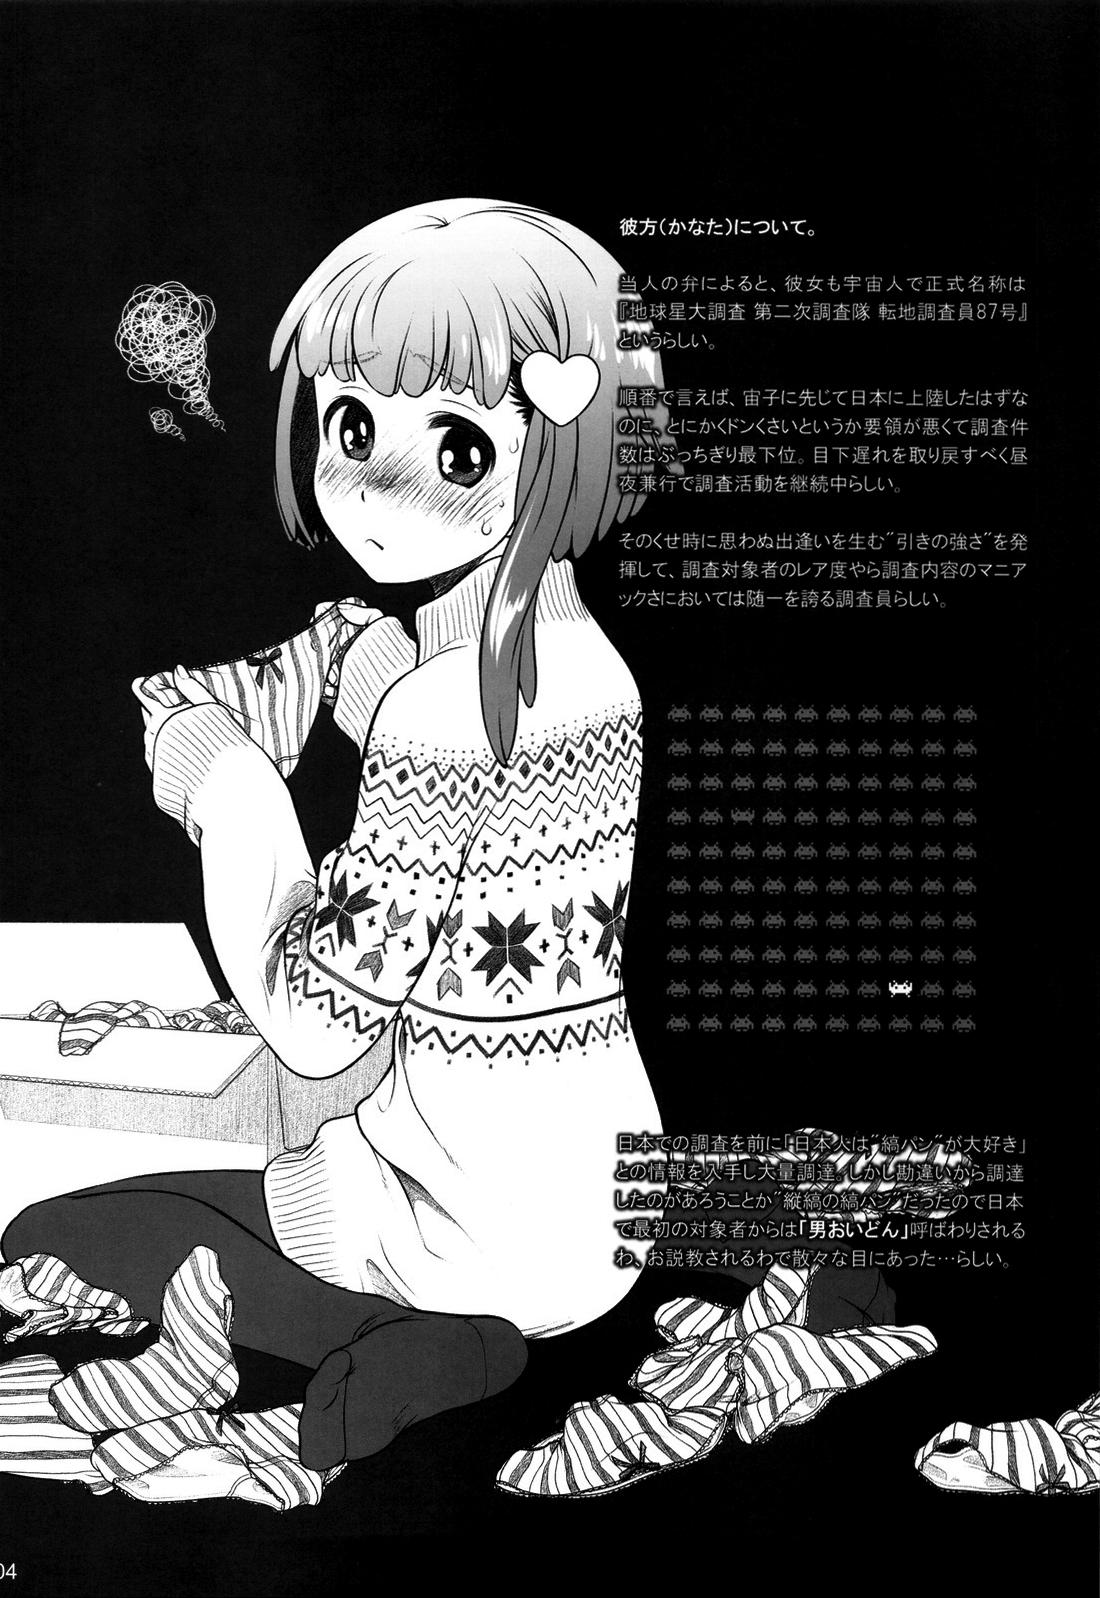 Oil Sorako no Tabi 4 - Kanata no Tabi Office - Page 3